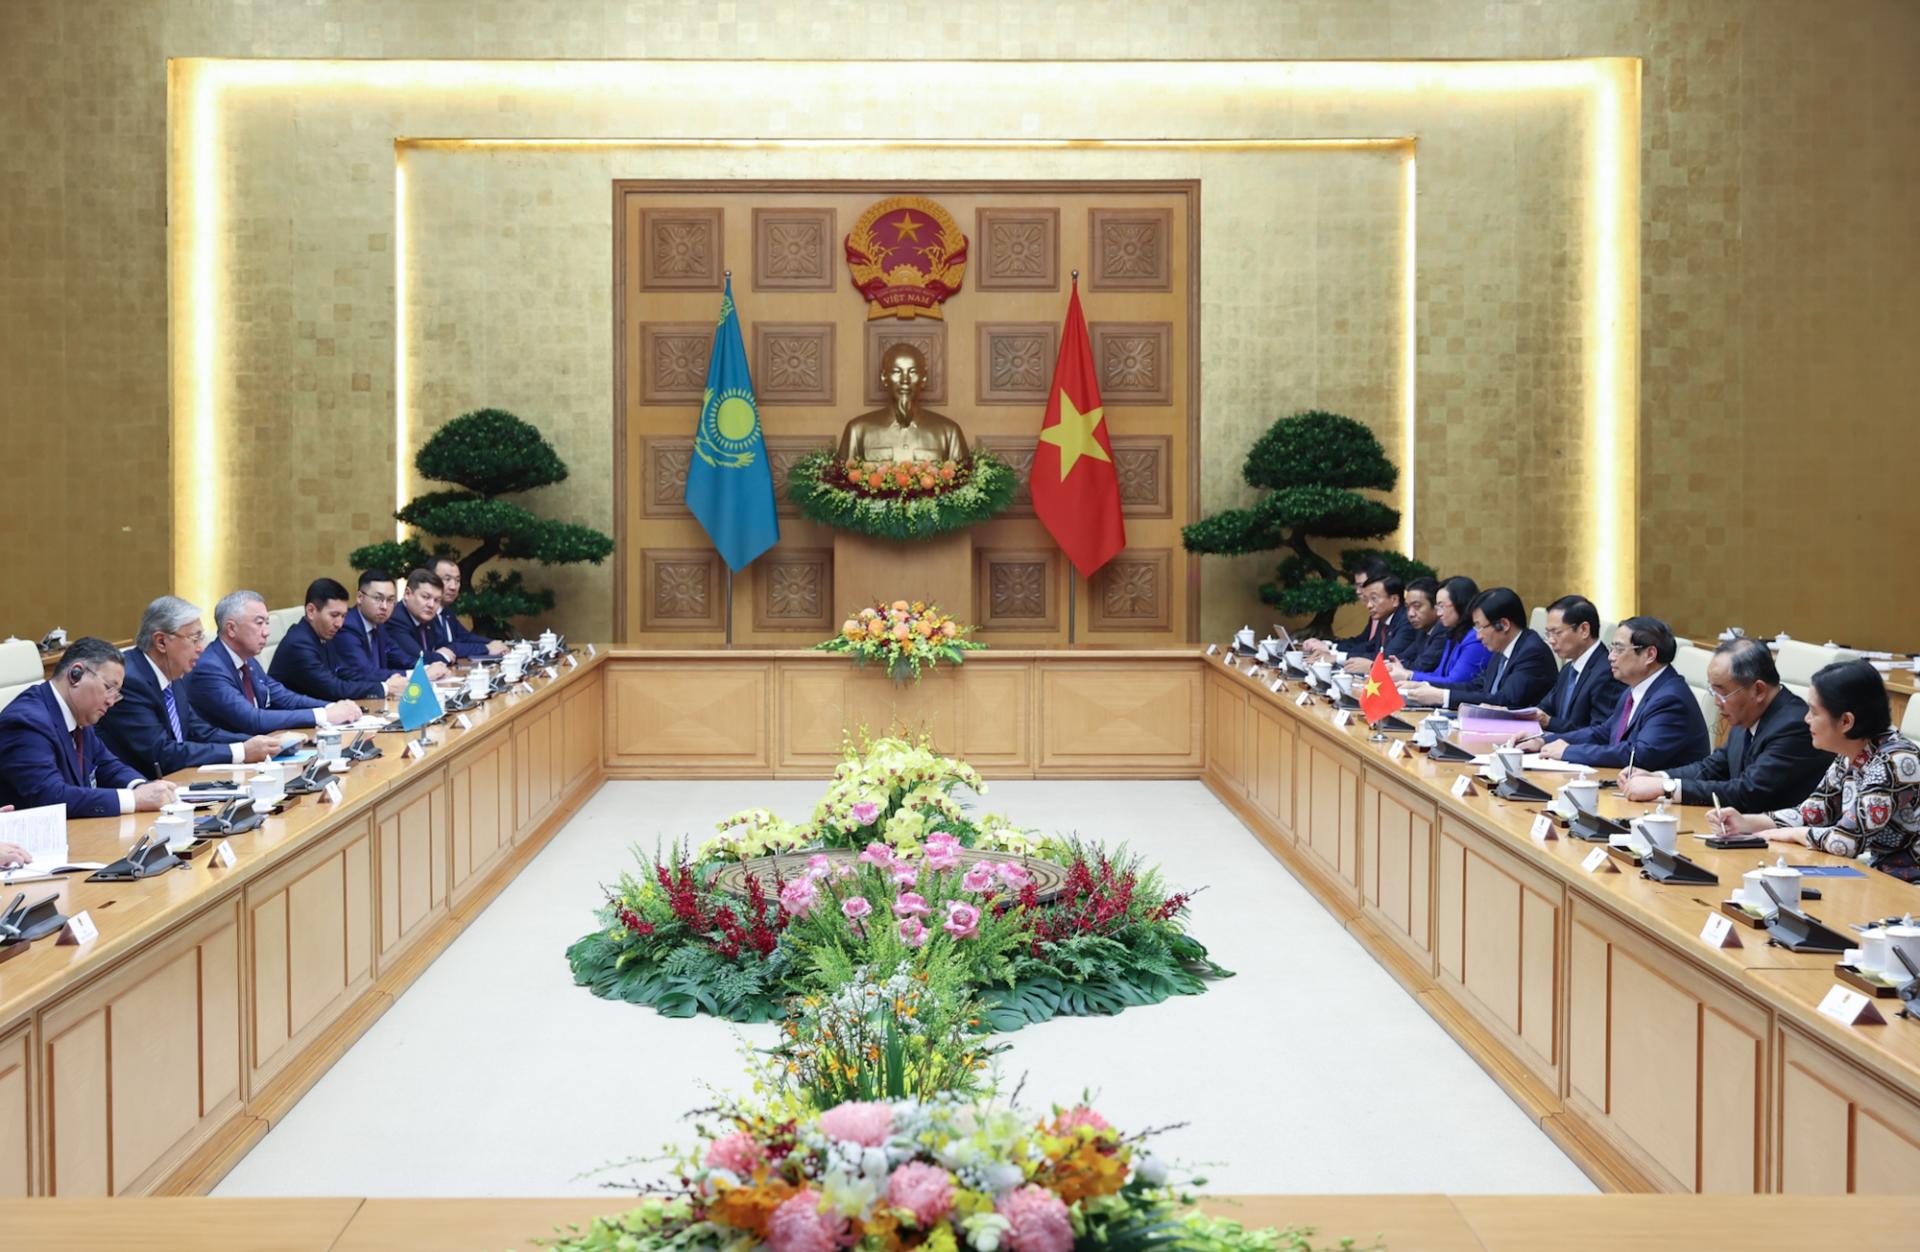 Thủ tướng Phạm Minh Chính đề nghị Kazakhstan tiếp tục tạo thuận lợi cho các mặt hàng thế mạnh của Việt Nam như nông sản, thủy sản, hàng dệt may, đồ gỗ tiếp cận thị trường Kazakhstan 